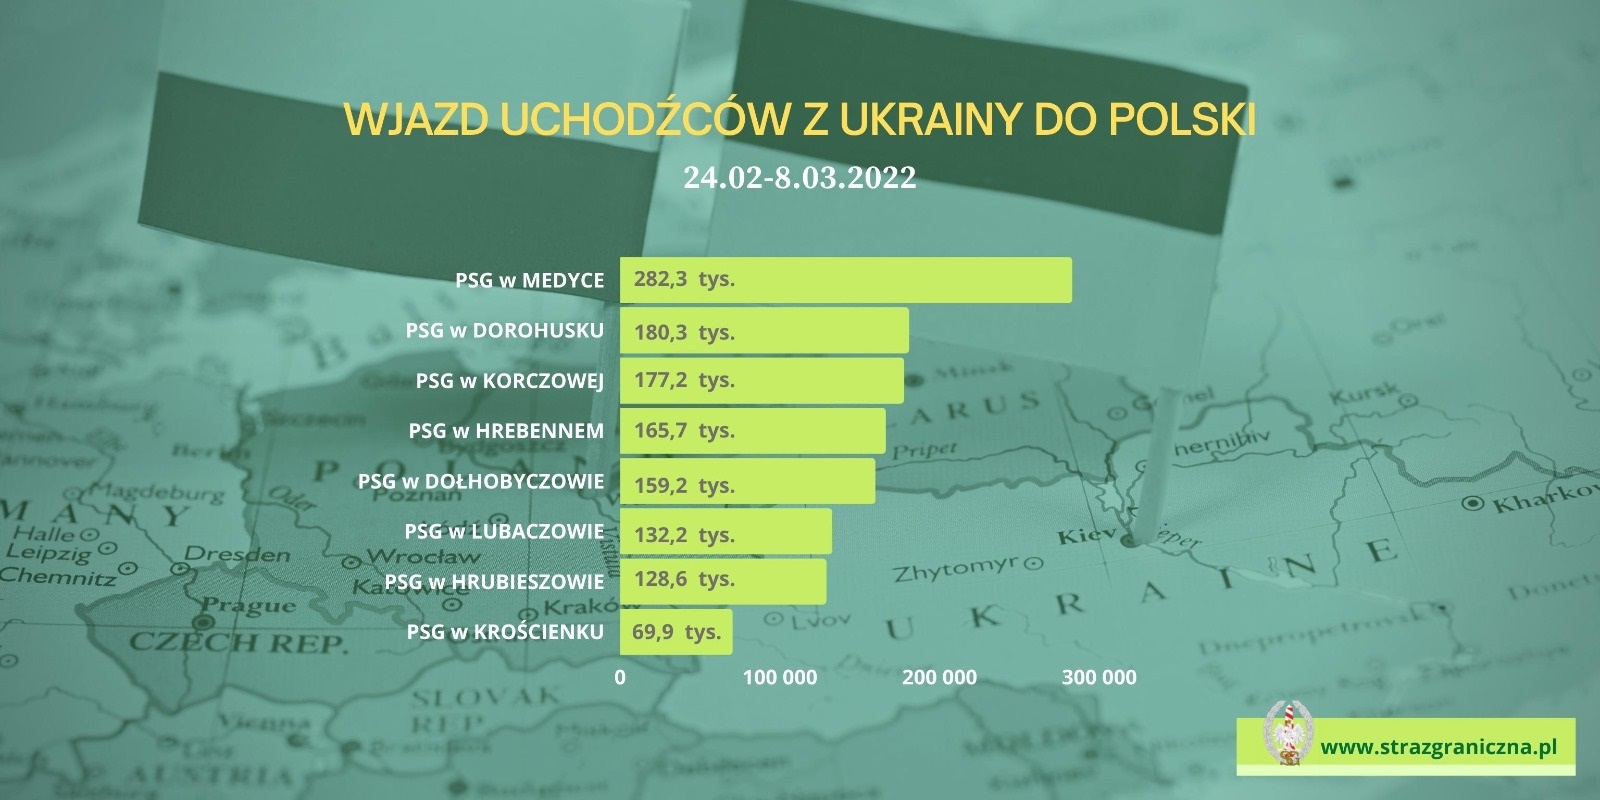 Do Polski od początku wojny w Ukrainie przybyło 1,43 mln osób